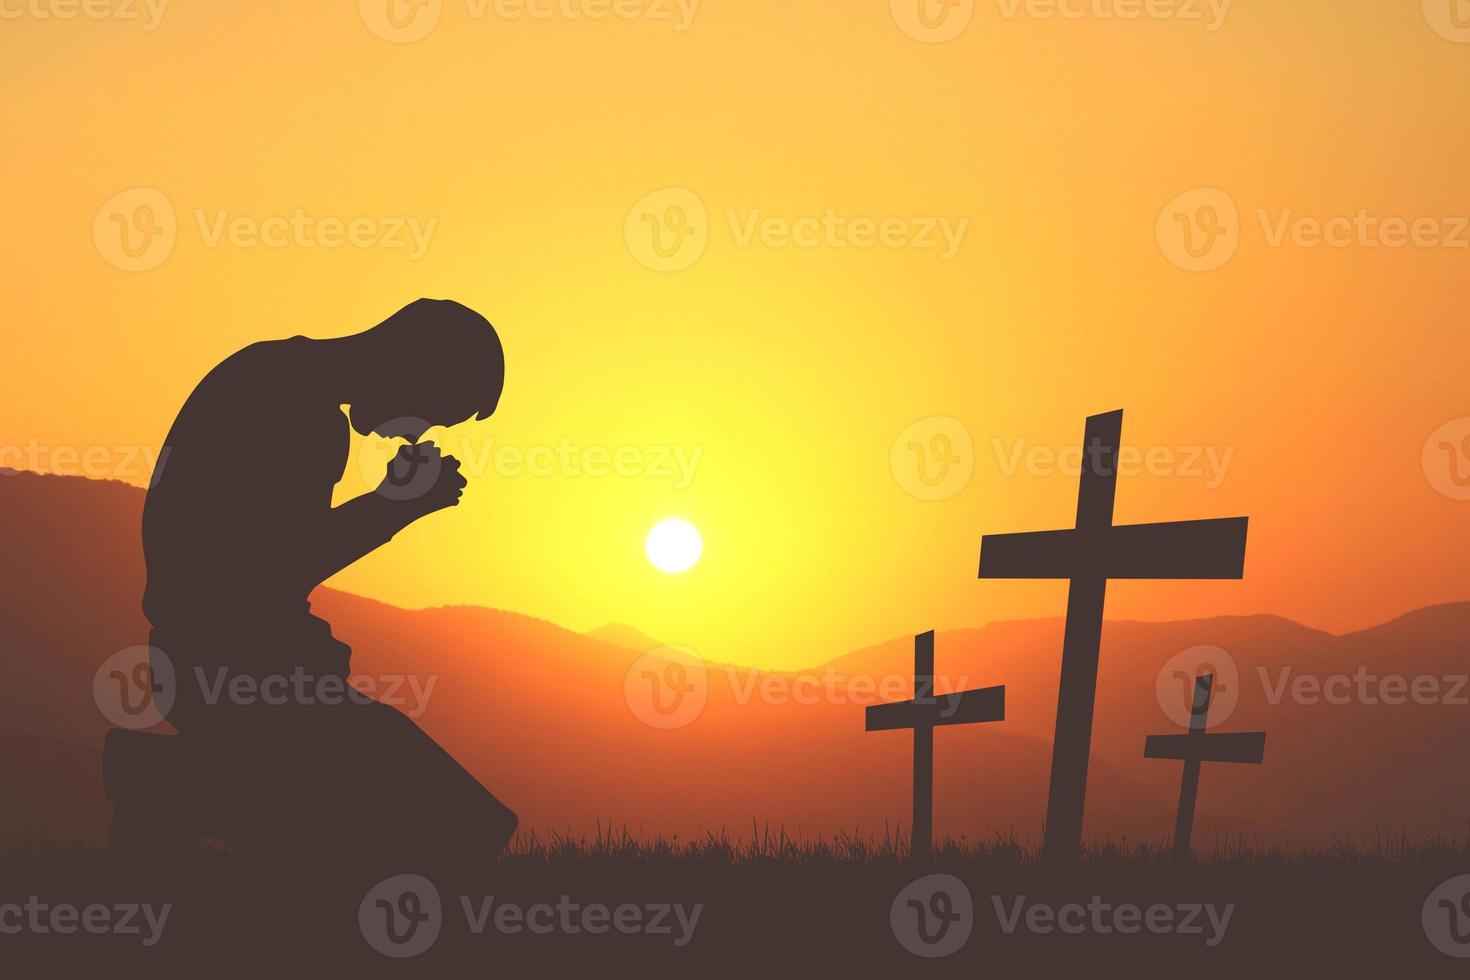 silhouette de mains de prière chrétiennes personnes spirituelles et religieuses priant les concepts de christianisme de dieu. mettre fin à la guerre et à la violence photo